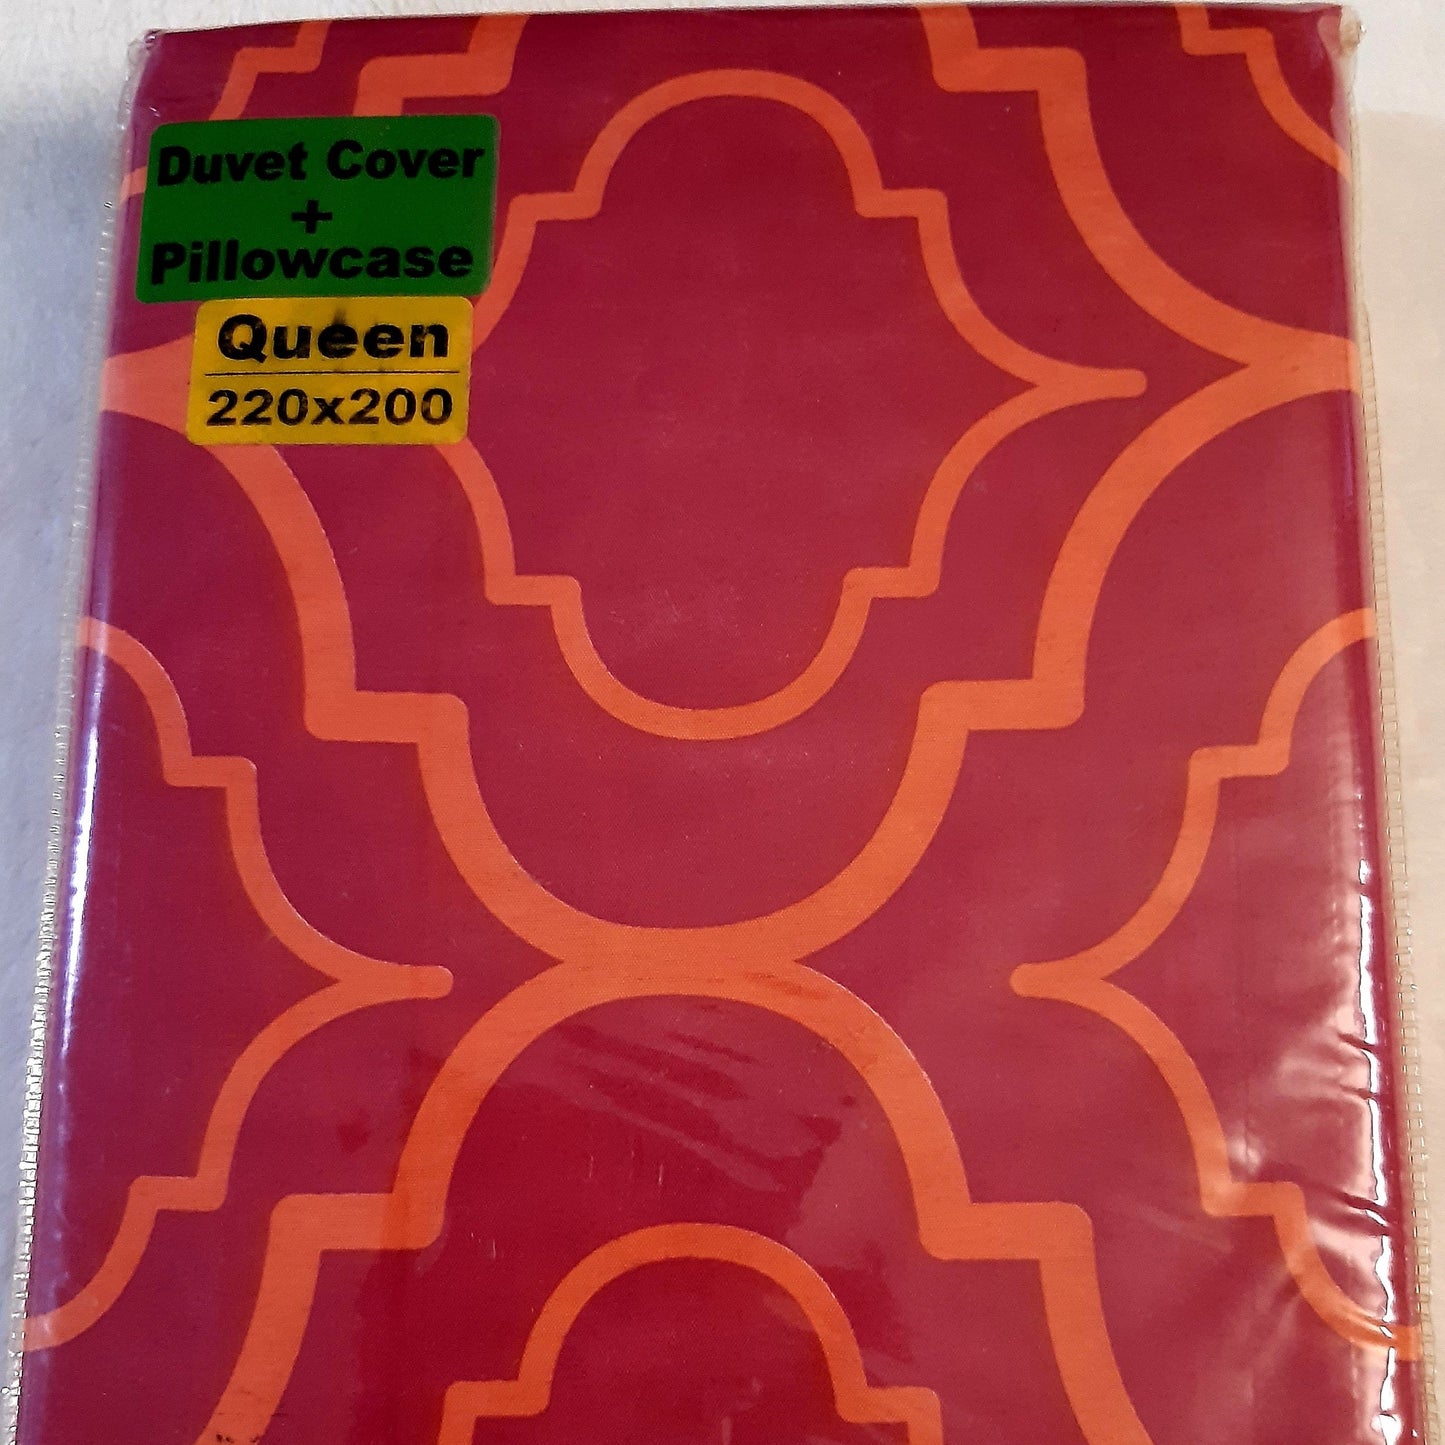 3 Piece Queen Size Duvet Set freeshipping - Dealz4all Store